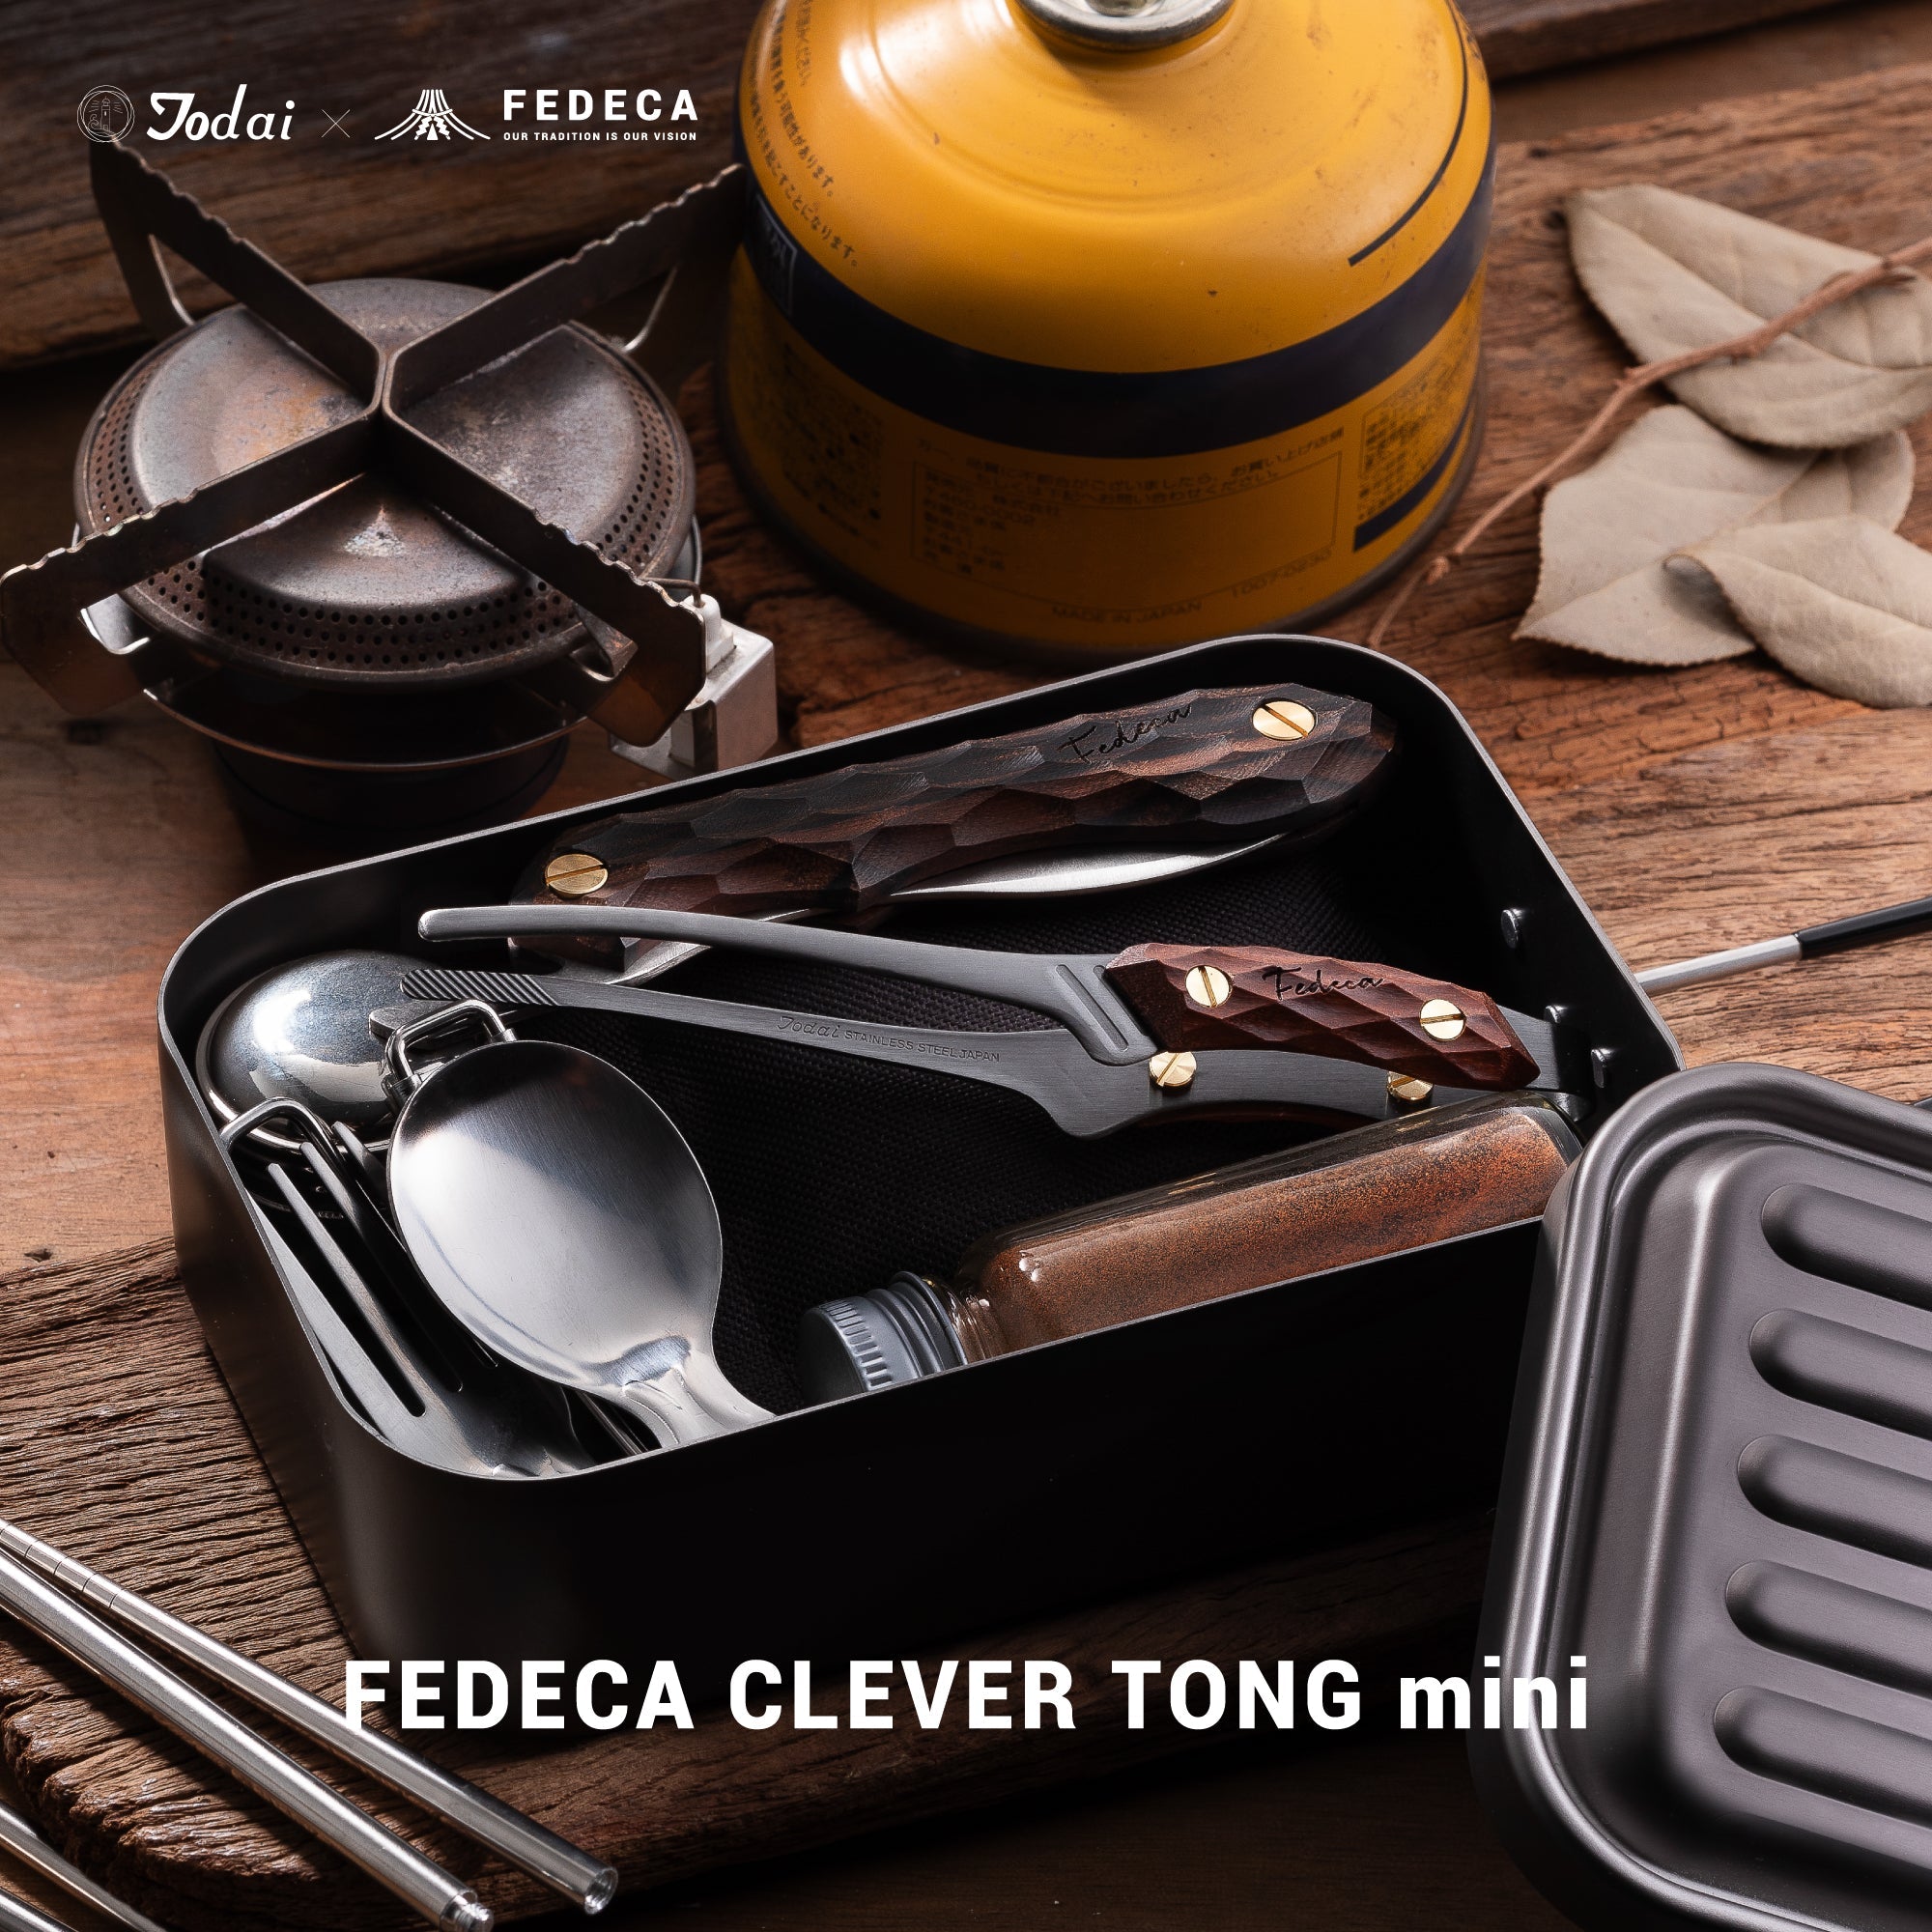 【予約】FEDECA CLEVER TONG mini プレーンブラック 4,620円 【6月下旬以降順次発送 】